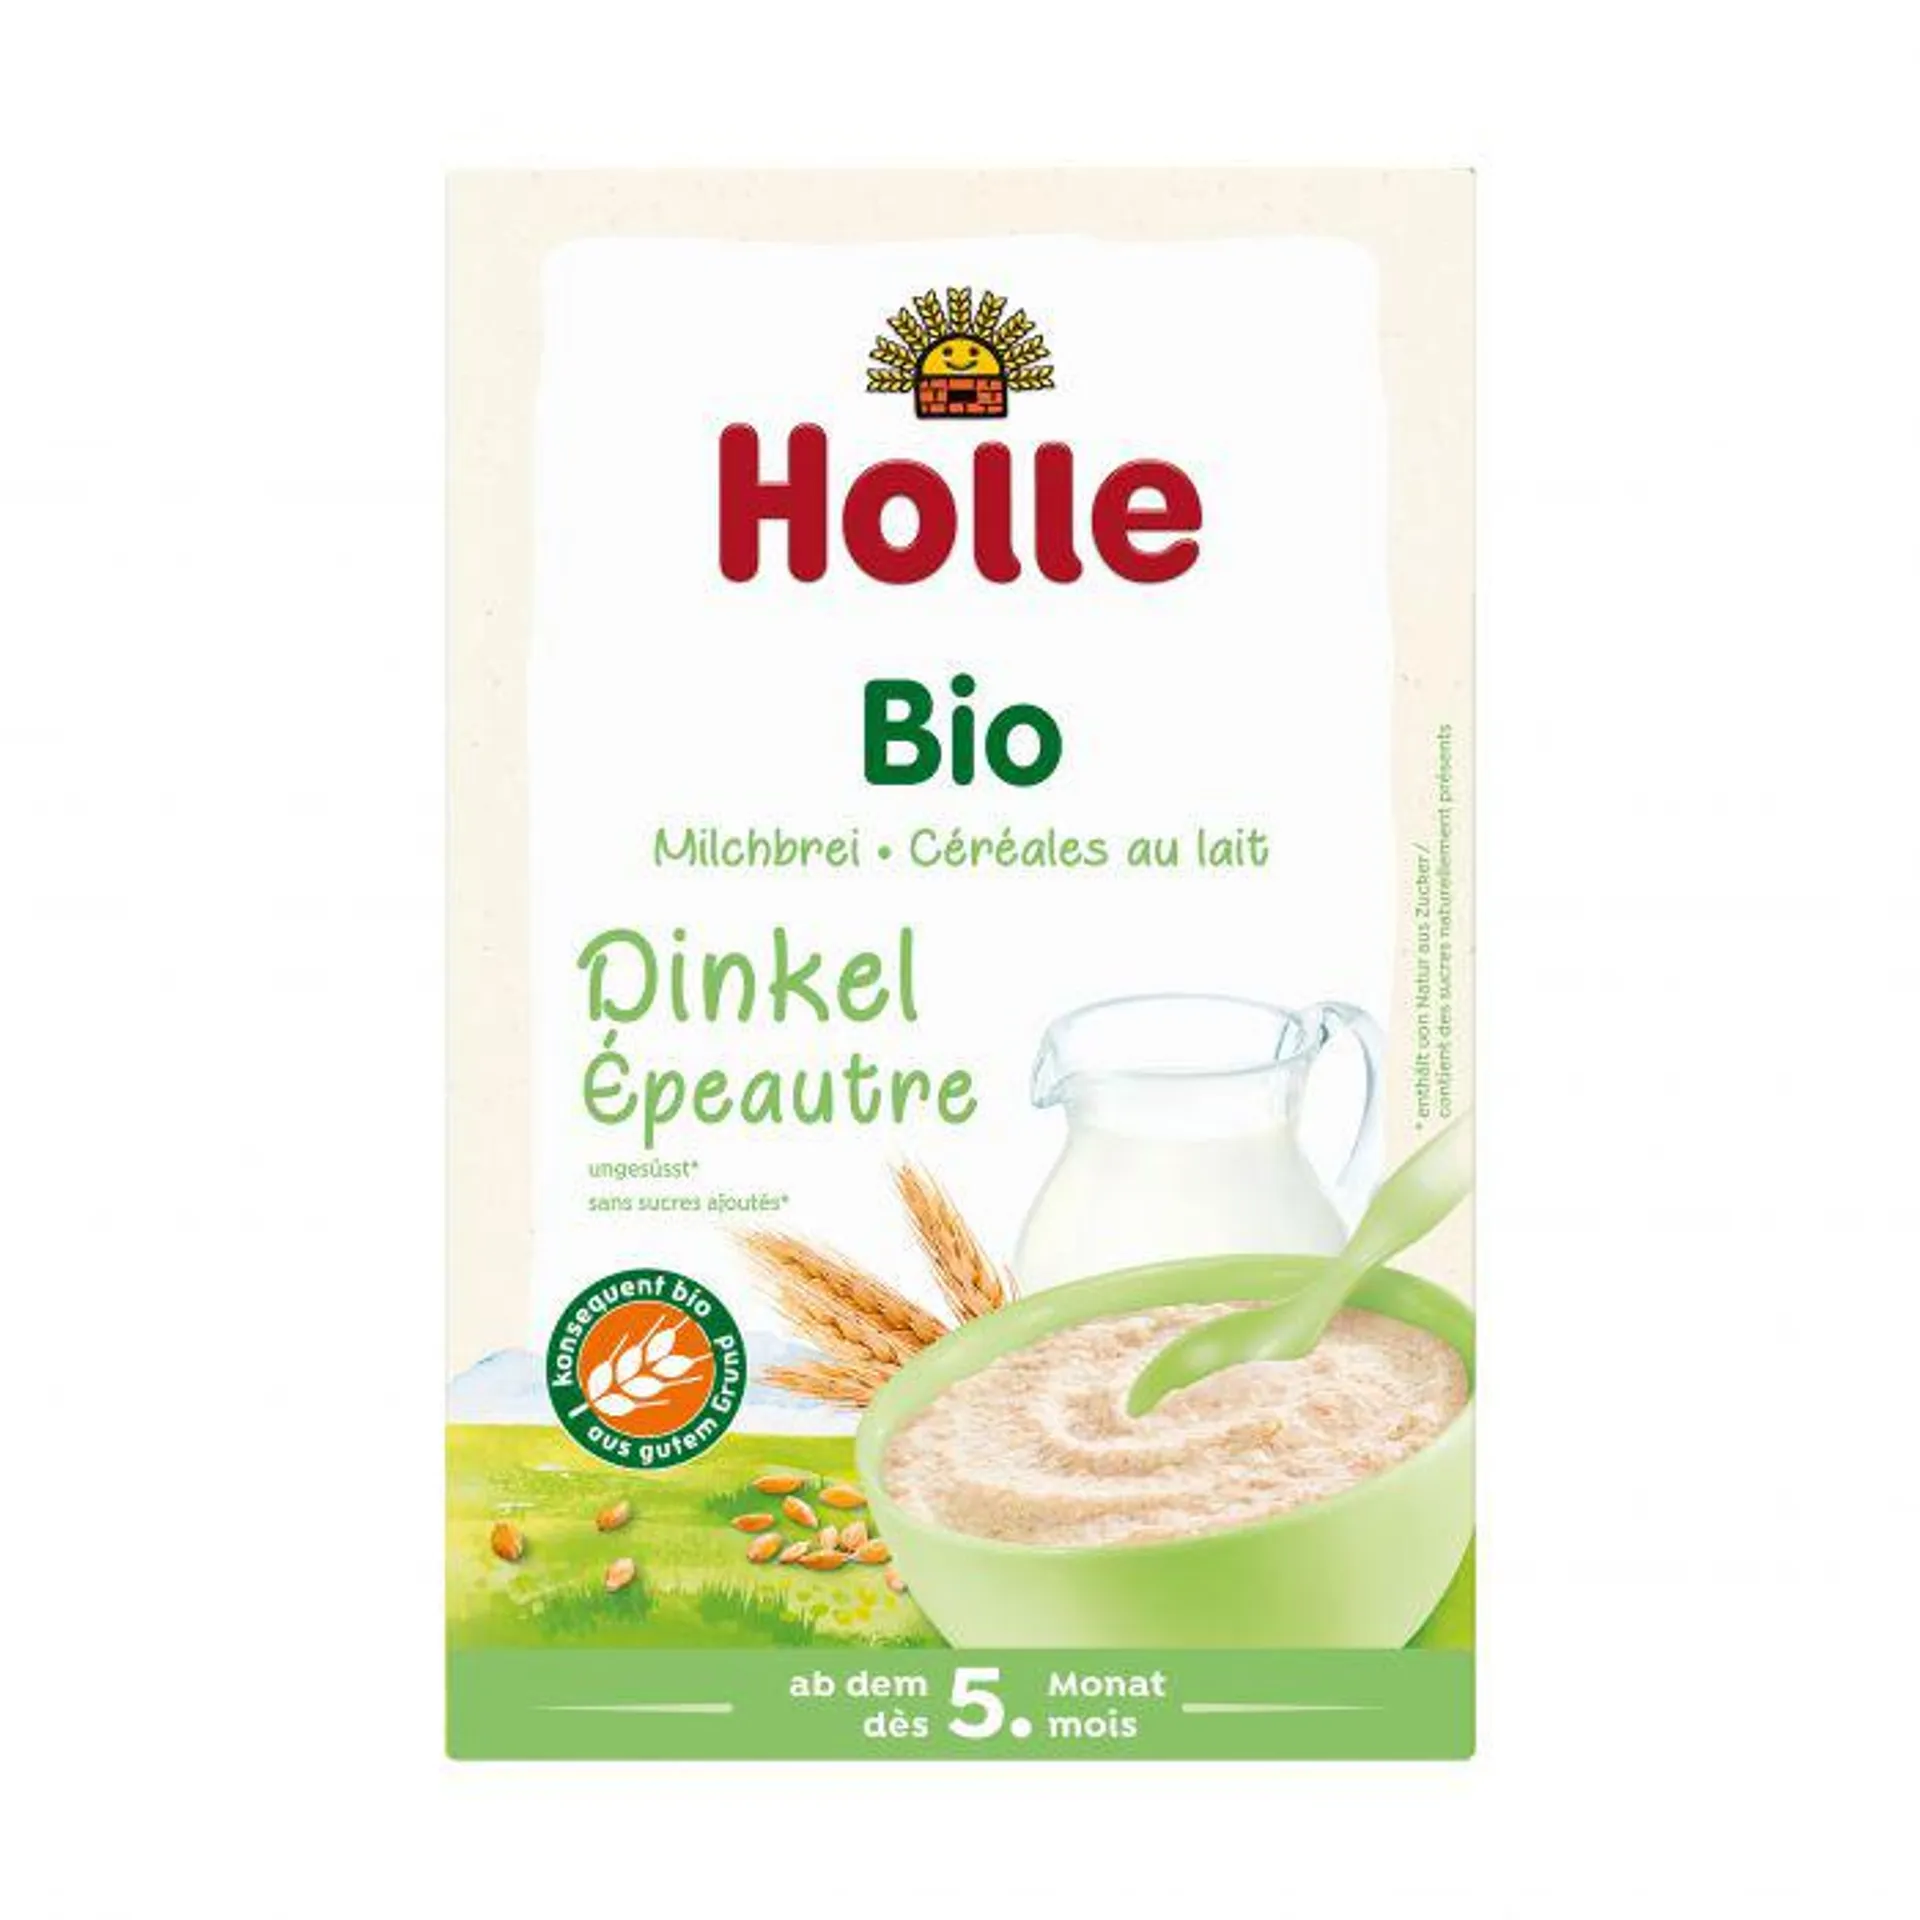 Holle Bio-Milchbrei Dinkel 250g